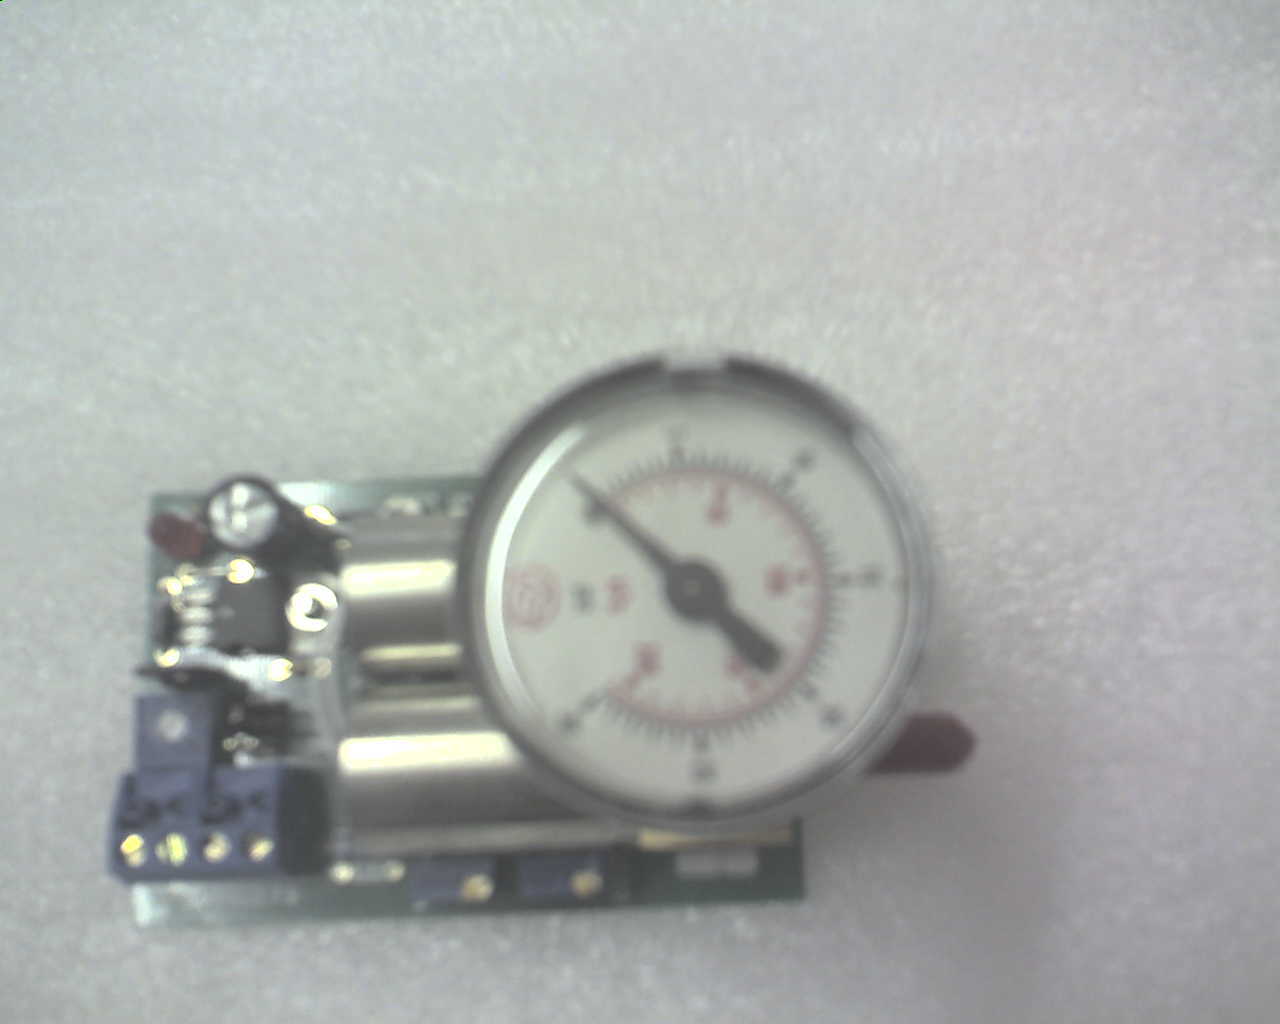 Transducer, PXP23LG, 0-10VDC / 0-20MA control to psi